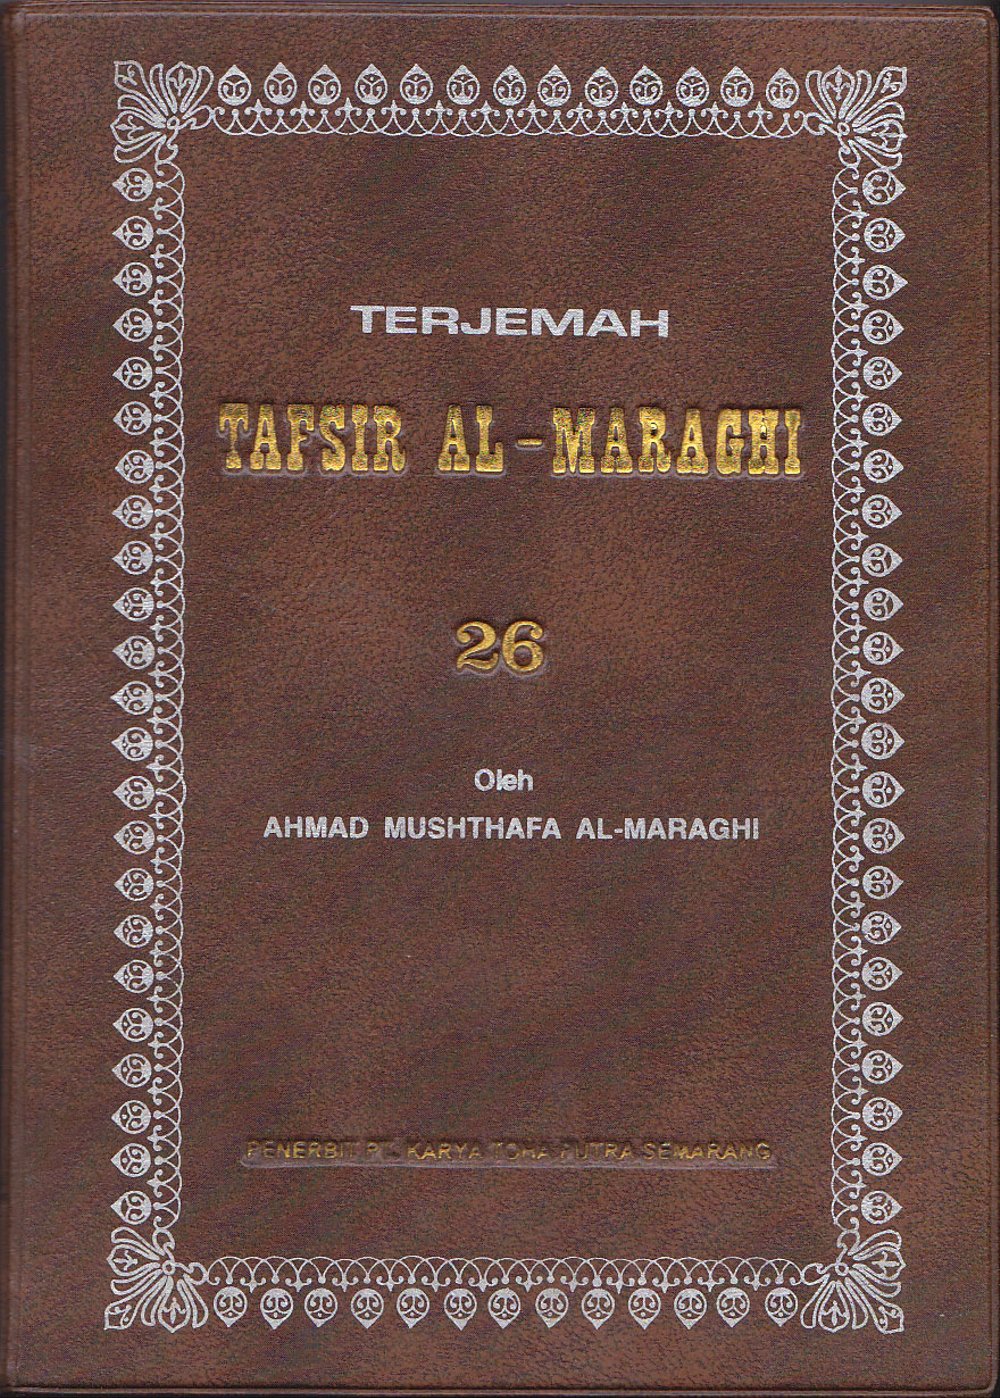 Download terjemah tafsir al-qurthubi. Pdf